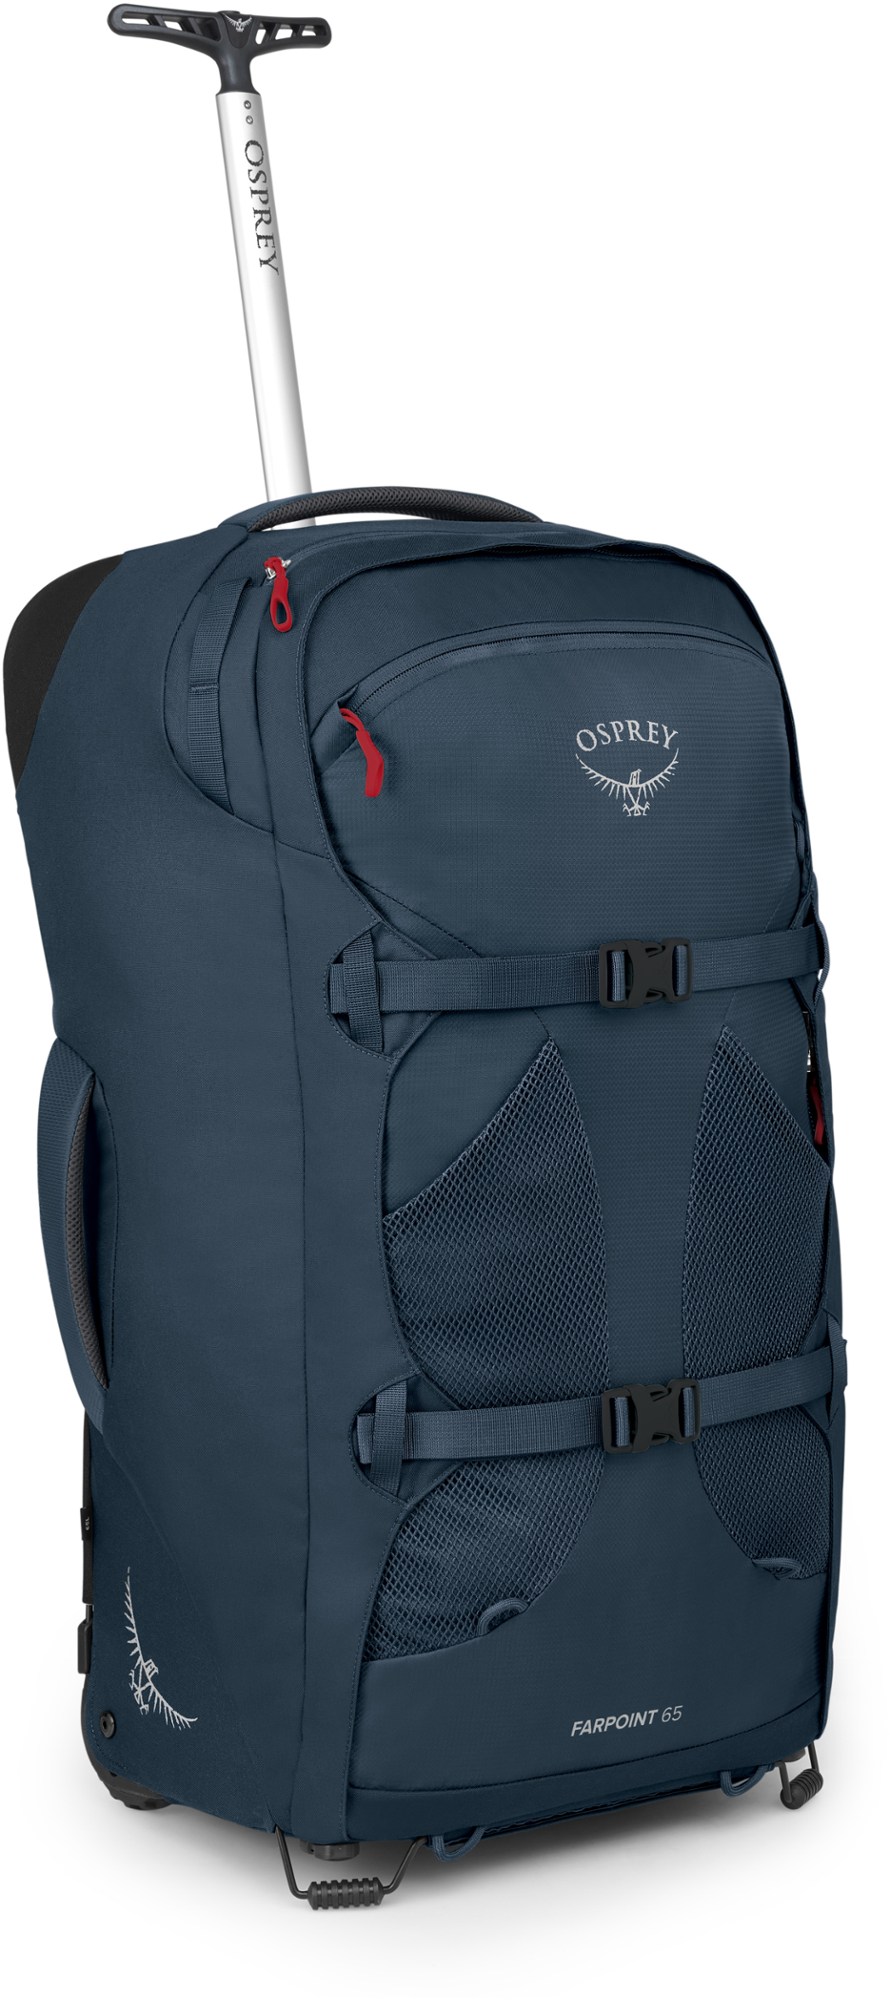 Дорожный рюкзак Farpoint 65 на колесиках — мужской Osprey, синий рюкзак osprey farpoint 55 reise 65 cm цвет tunnel vision grey